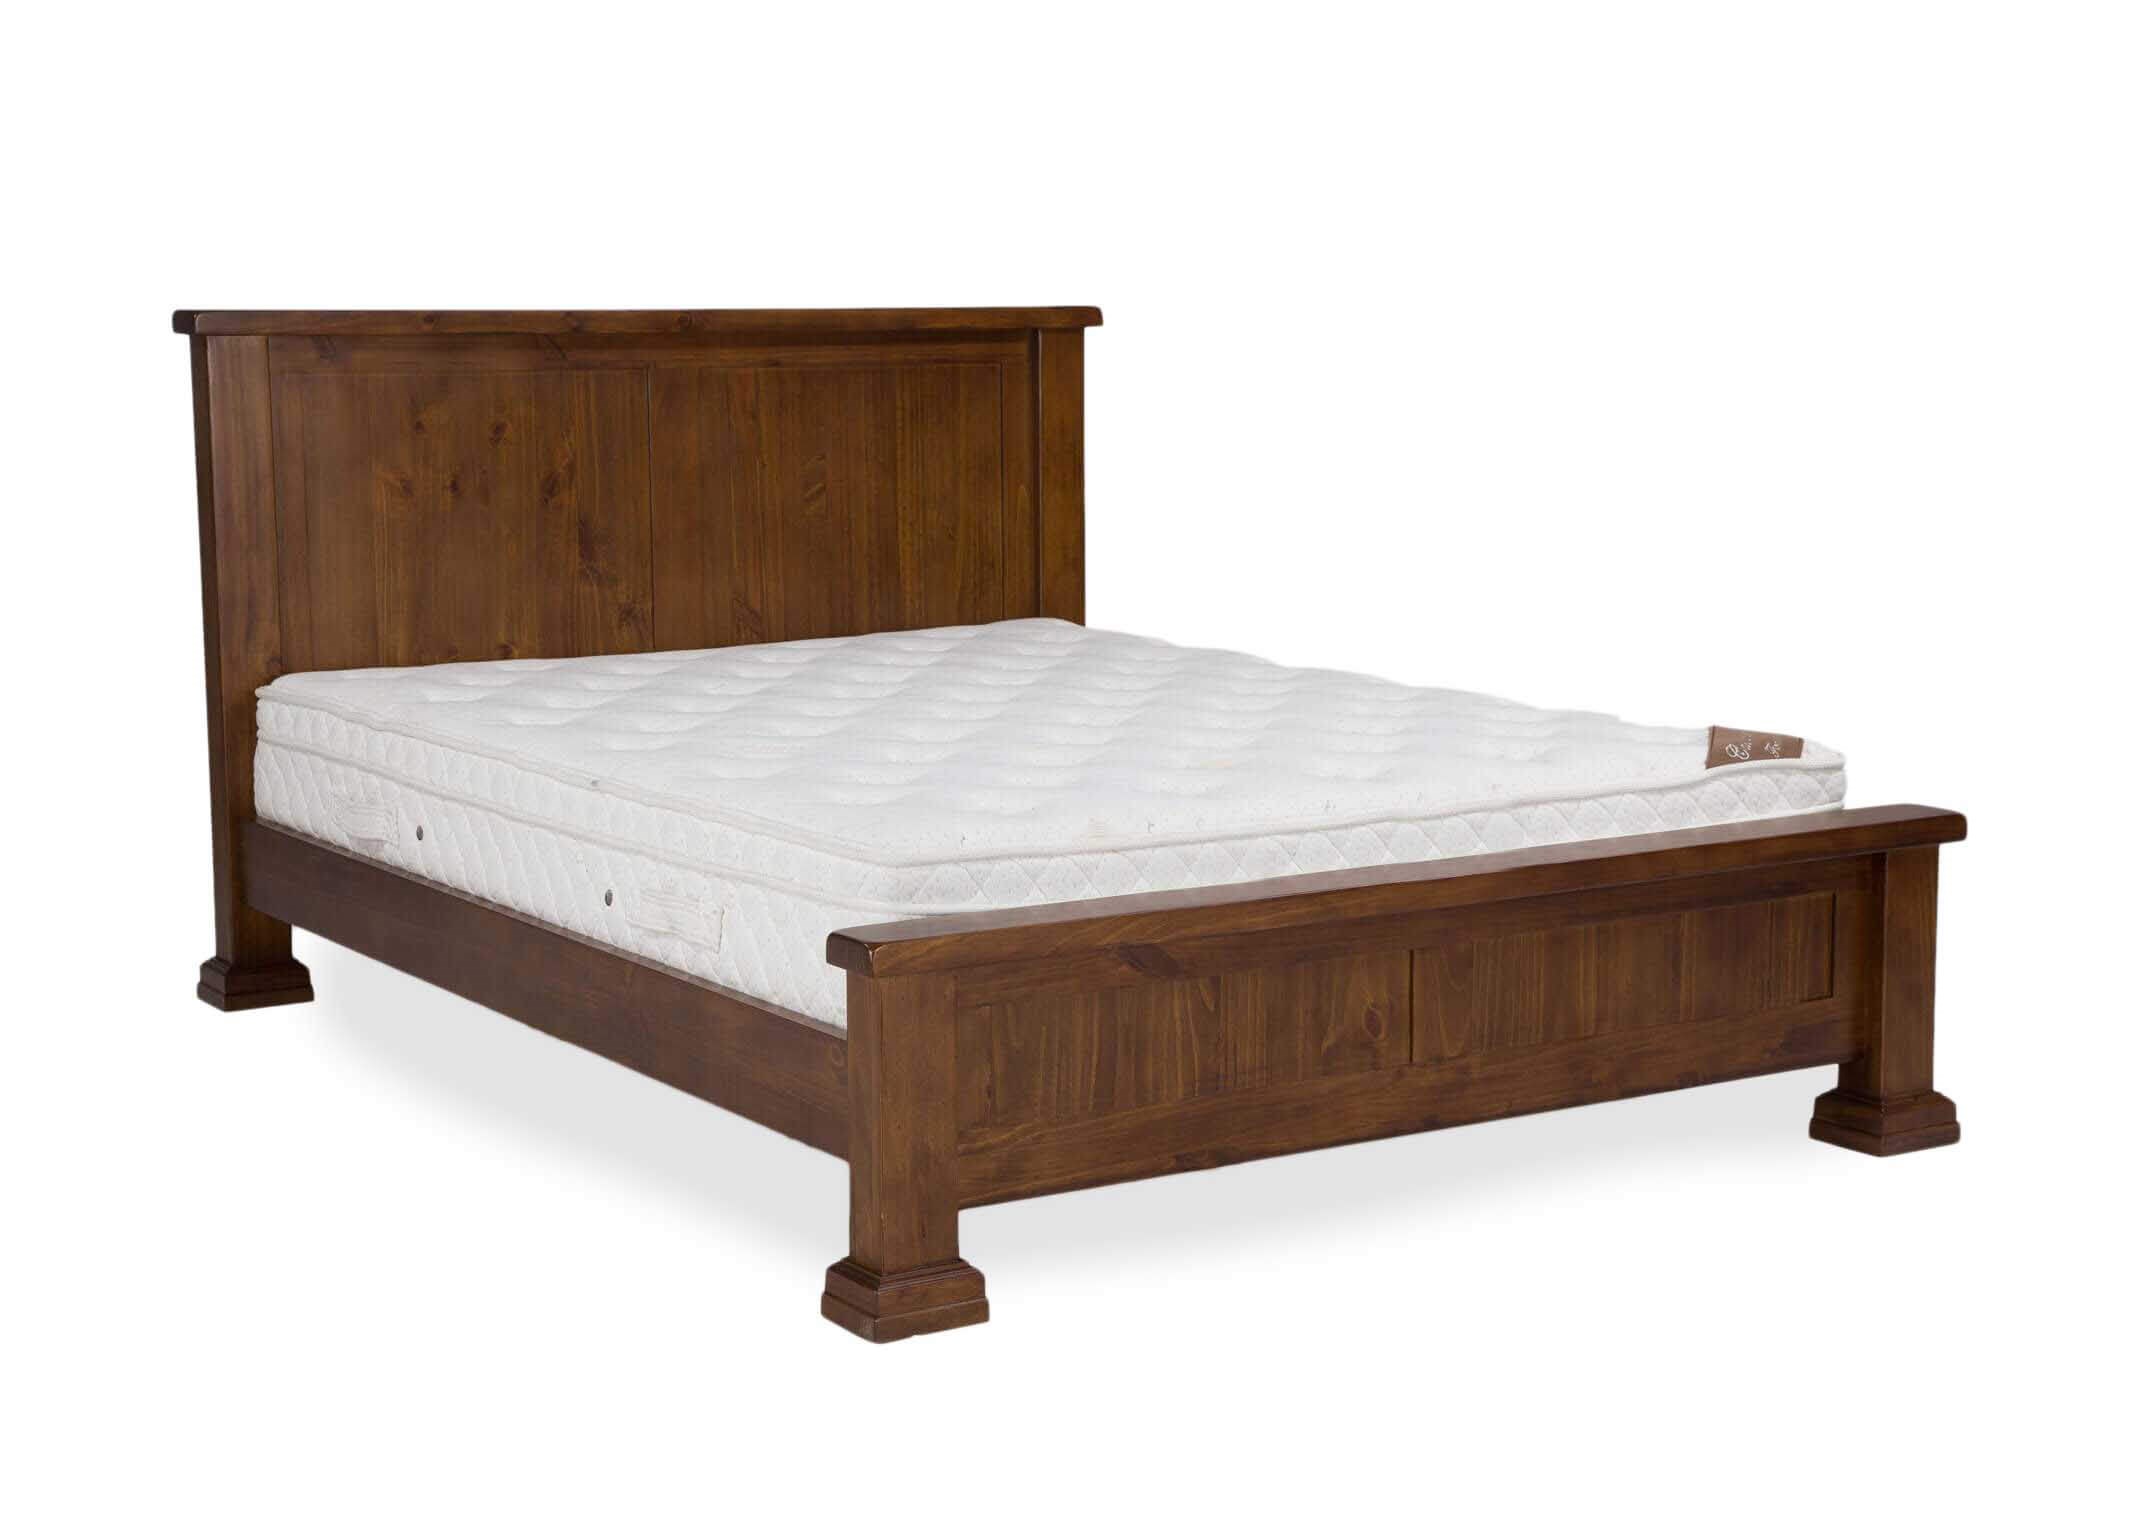 Solid Dark Gloss Wood Bed Frame, Solid Wood Bed Frame King Platform